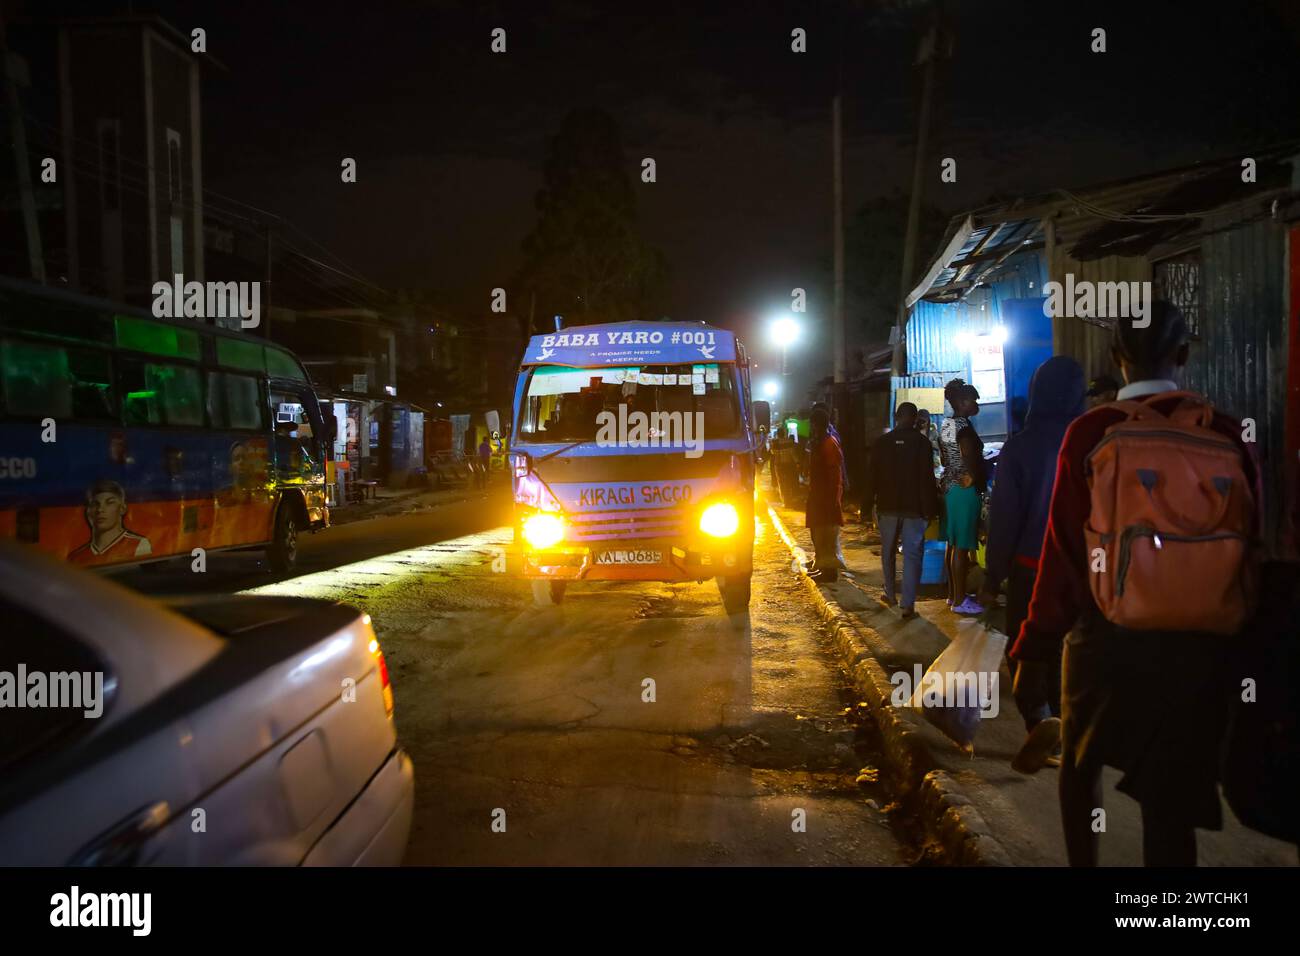 Autofahrer setzen Pendler ab, die von ihren verschiedenen Arbeitsorten ankommen. Kibera, der größte Slum in Nairobi und Afrika, beherbergt mehr als eine Mühle Stockfoto